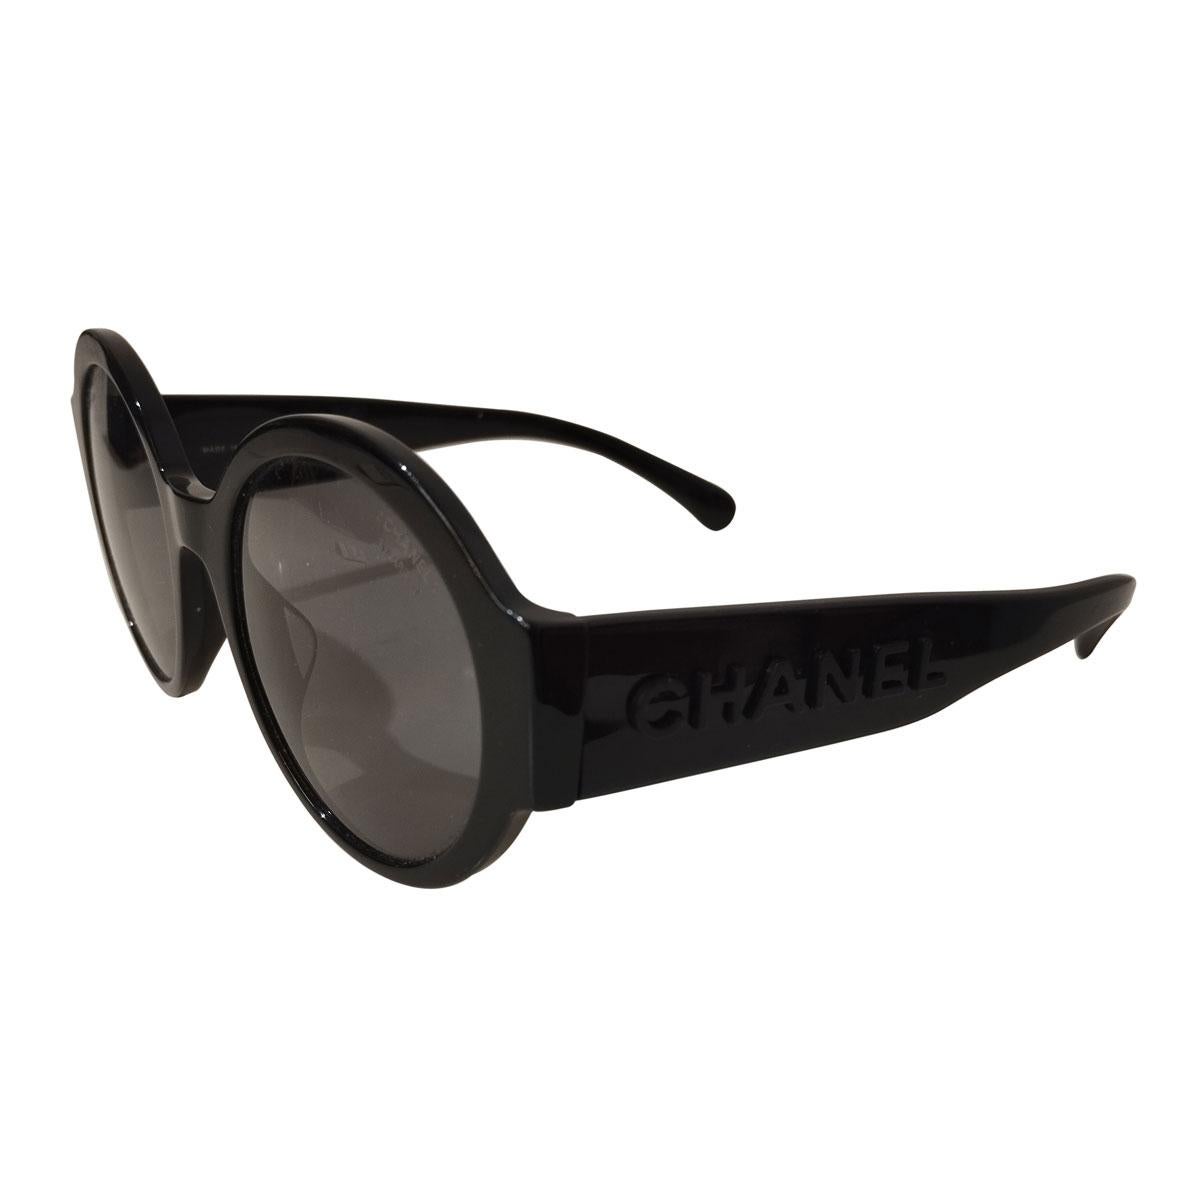 Sunglasses
5410A
CHANEL written on sides
Black frames
Dark lenses
Frame width cm 14,5 (5,7 inches)
Light signs on lenses